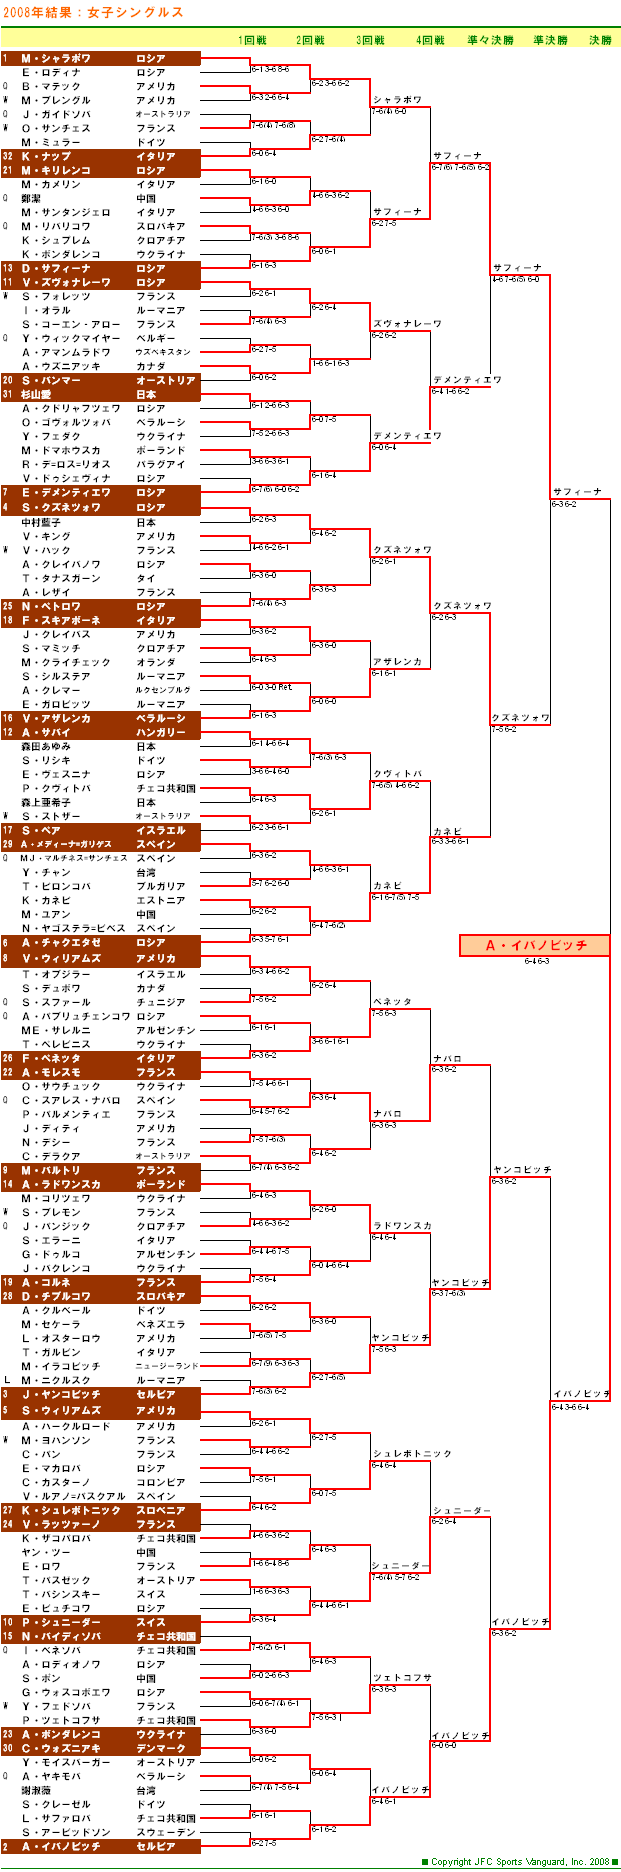 全仏オープンテニス2008　女子シングルスドロー表